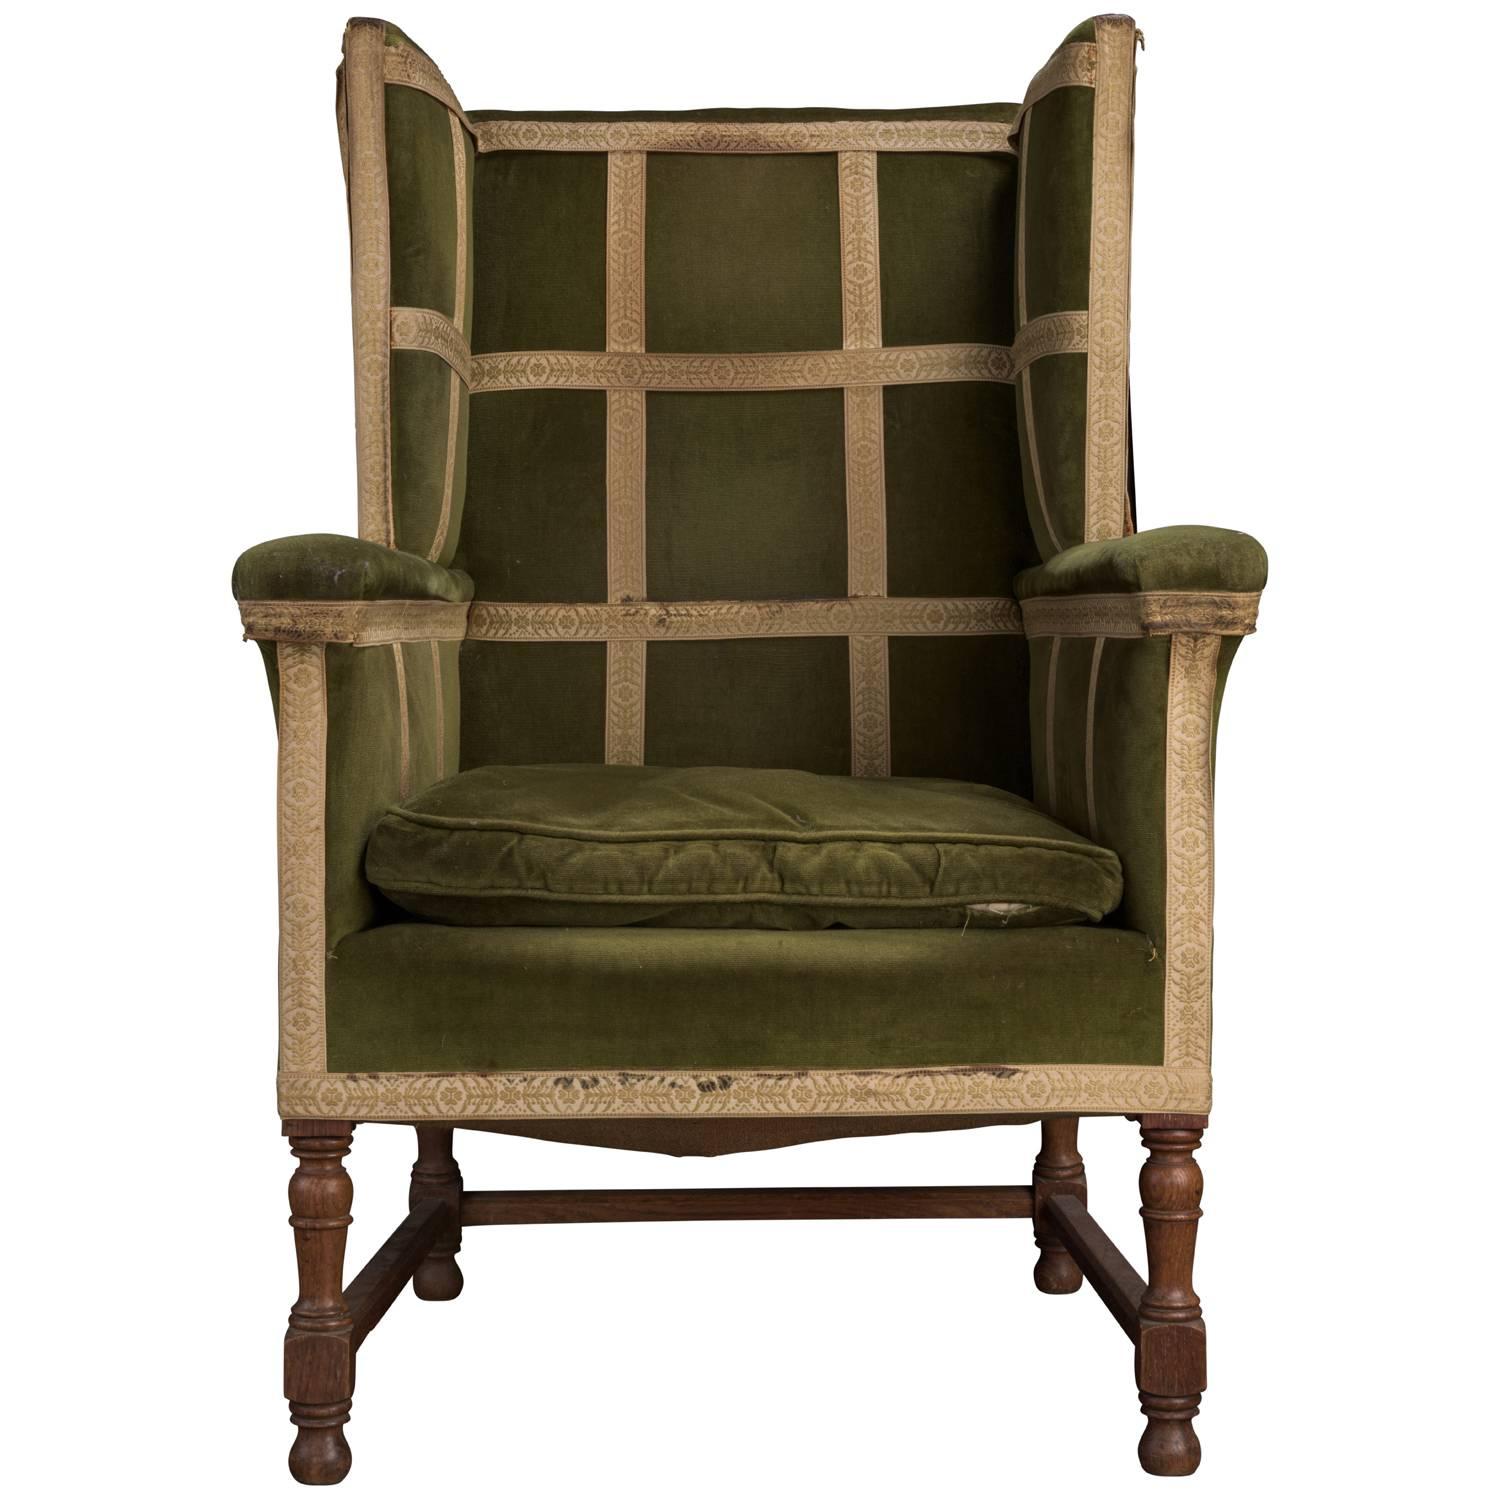 Green velvet upholstery with turned oak legs.